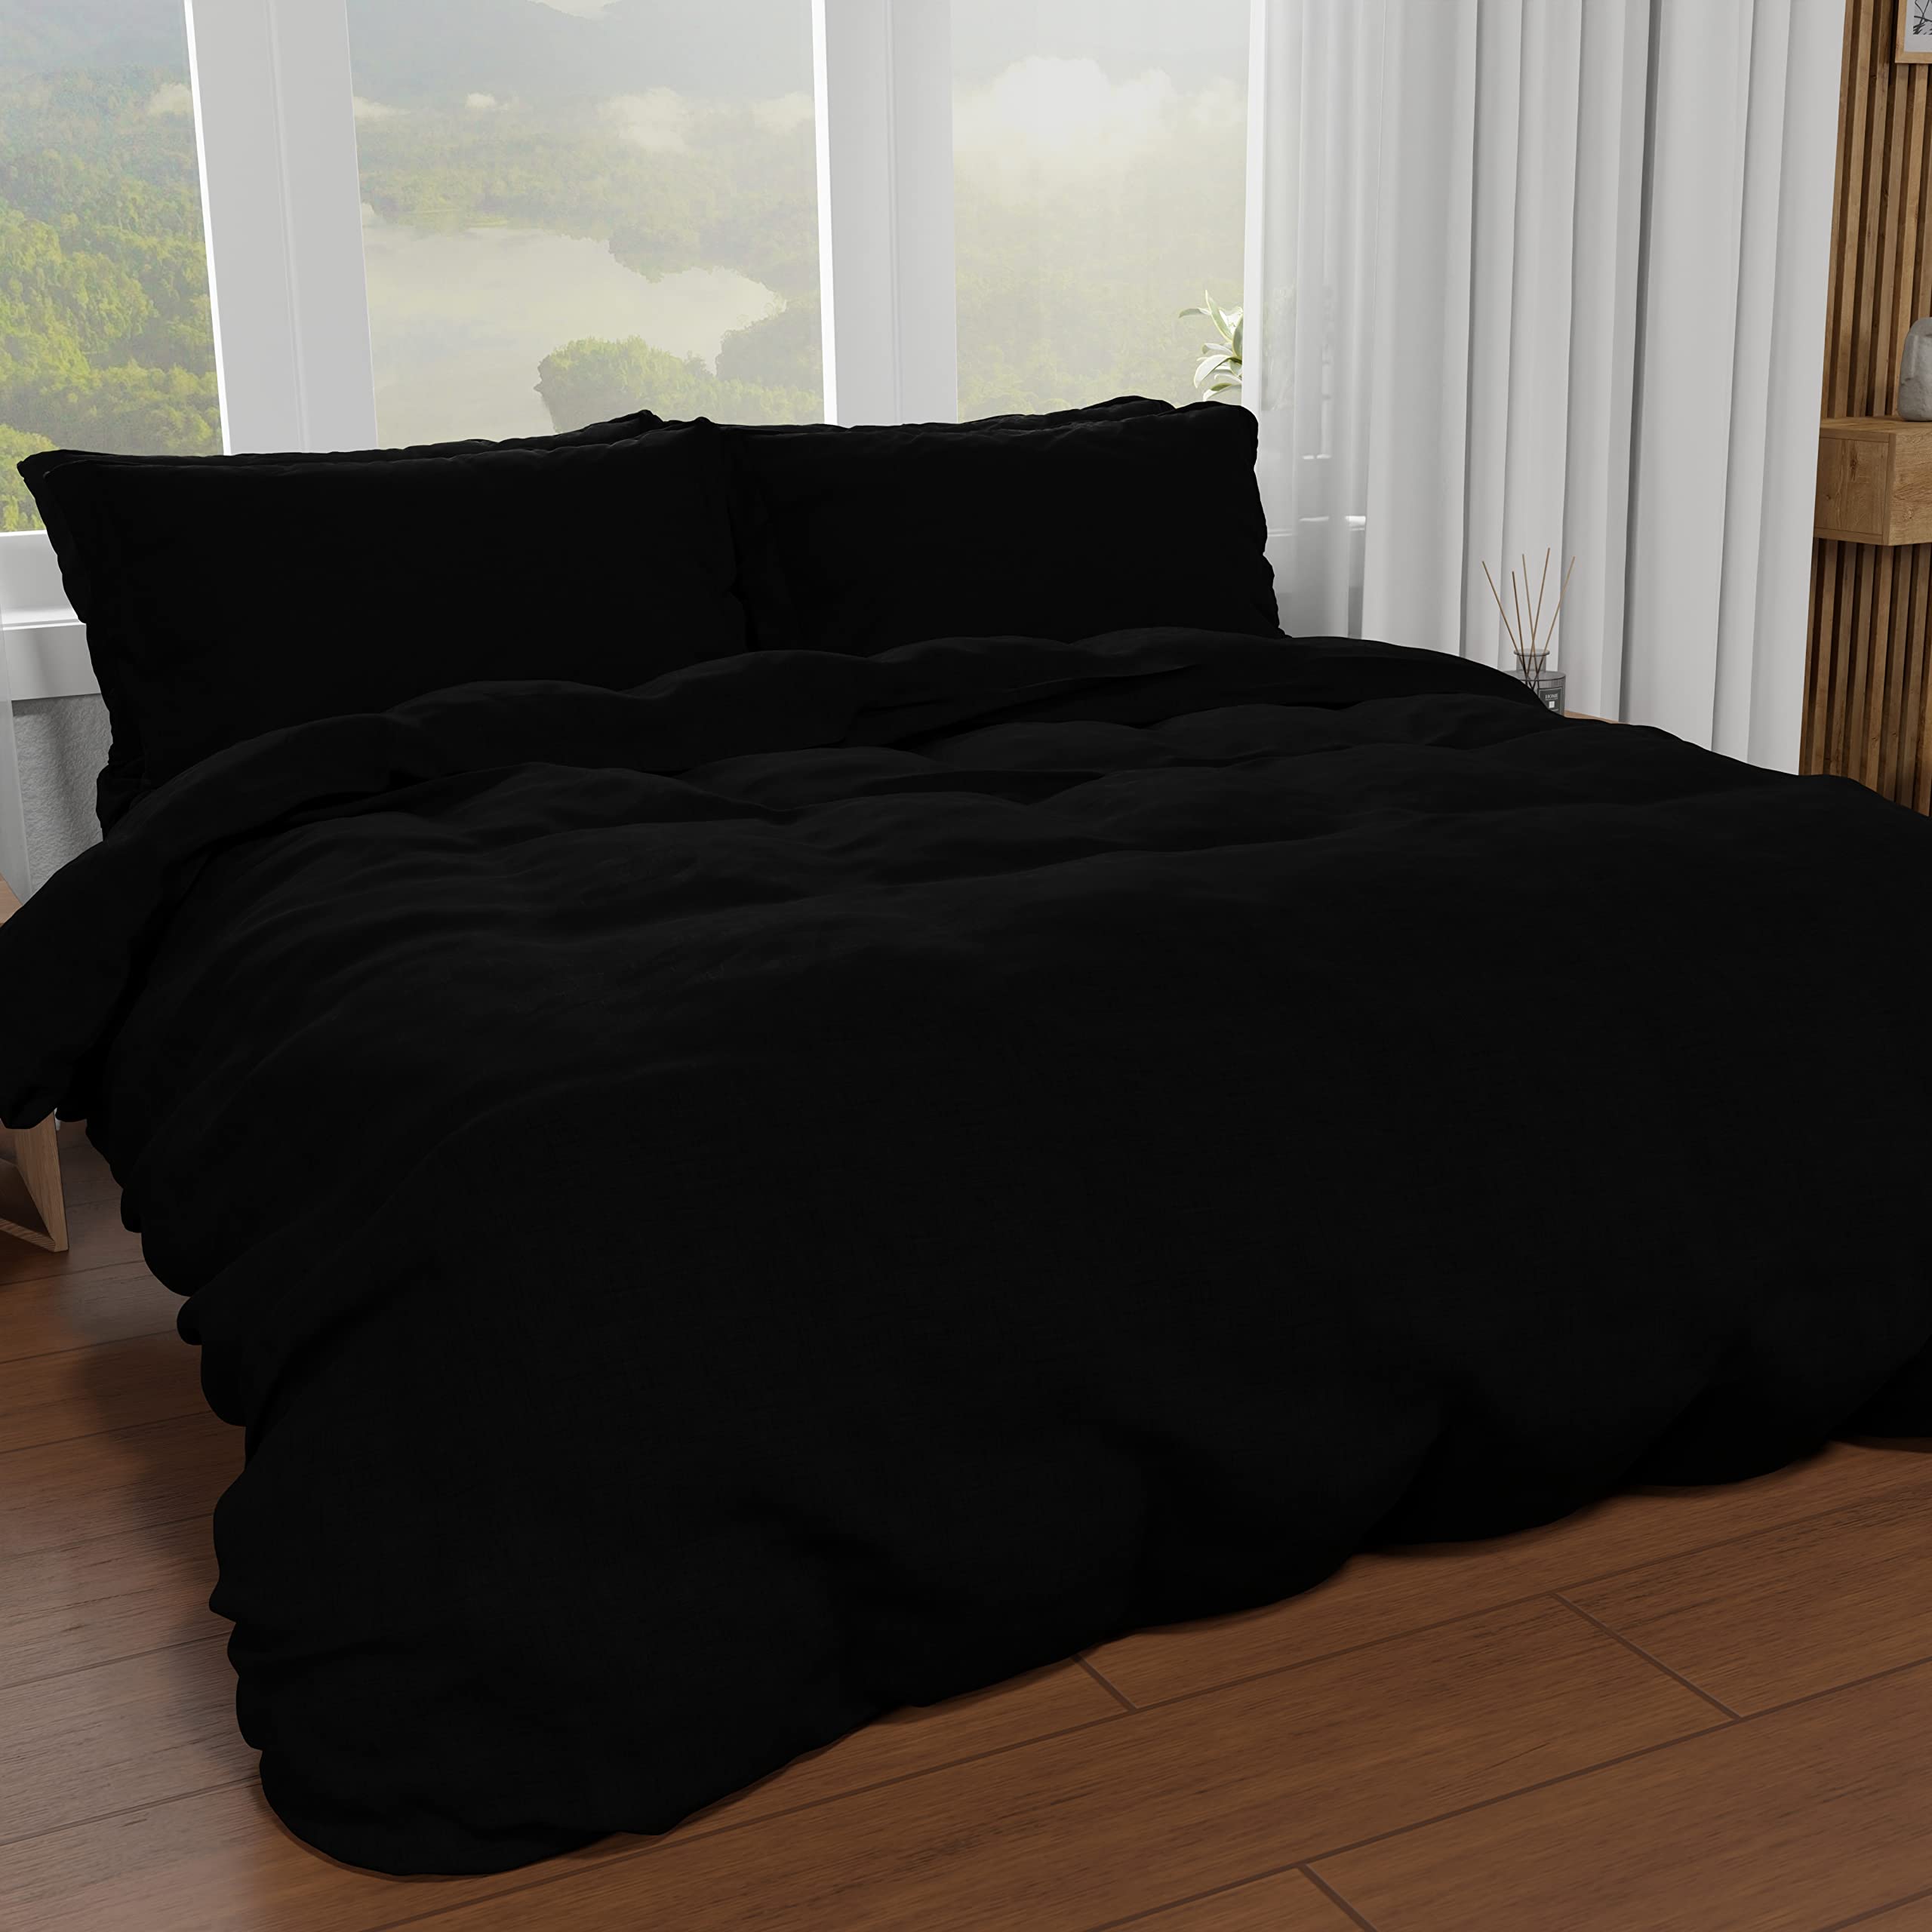 PETTI Artigiani Italiani - Bettbezug für französisches Bett, Bettbezug und Kissenbezüge aus Mikrofaser, einfarbig schwarz, 100% Made in Italy